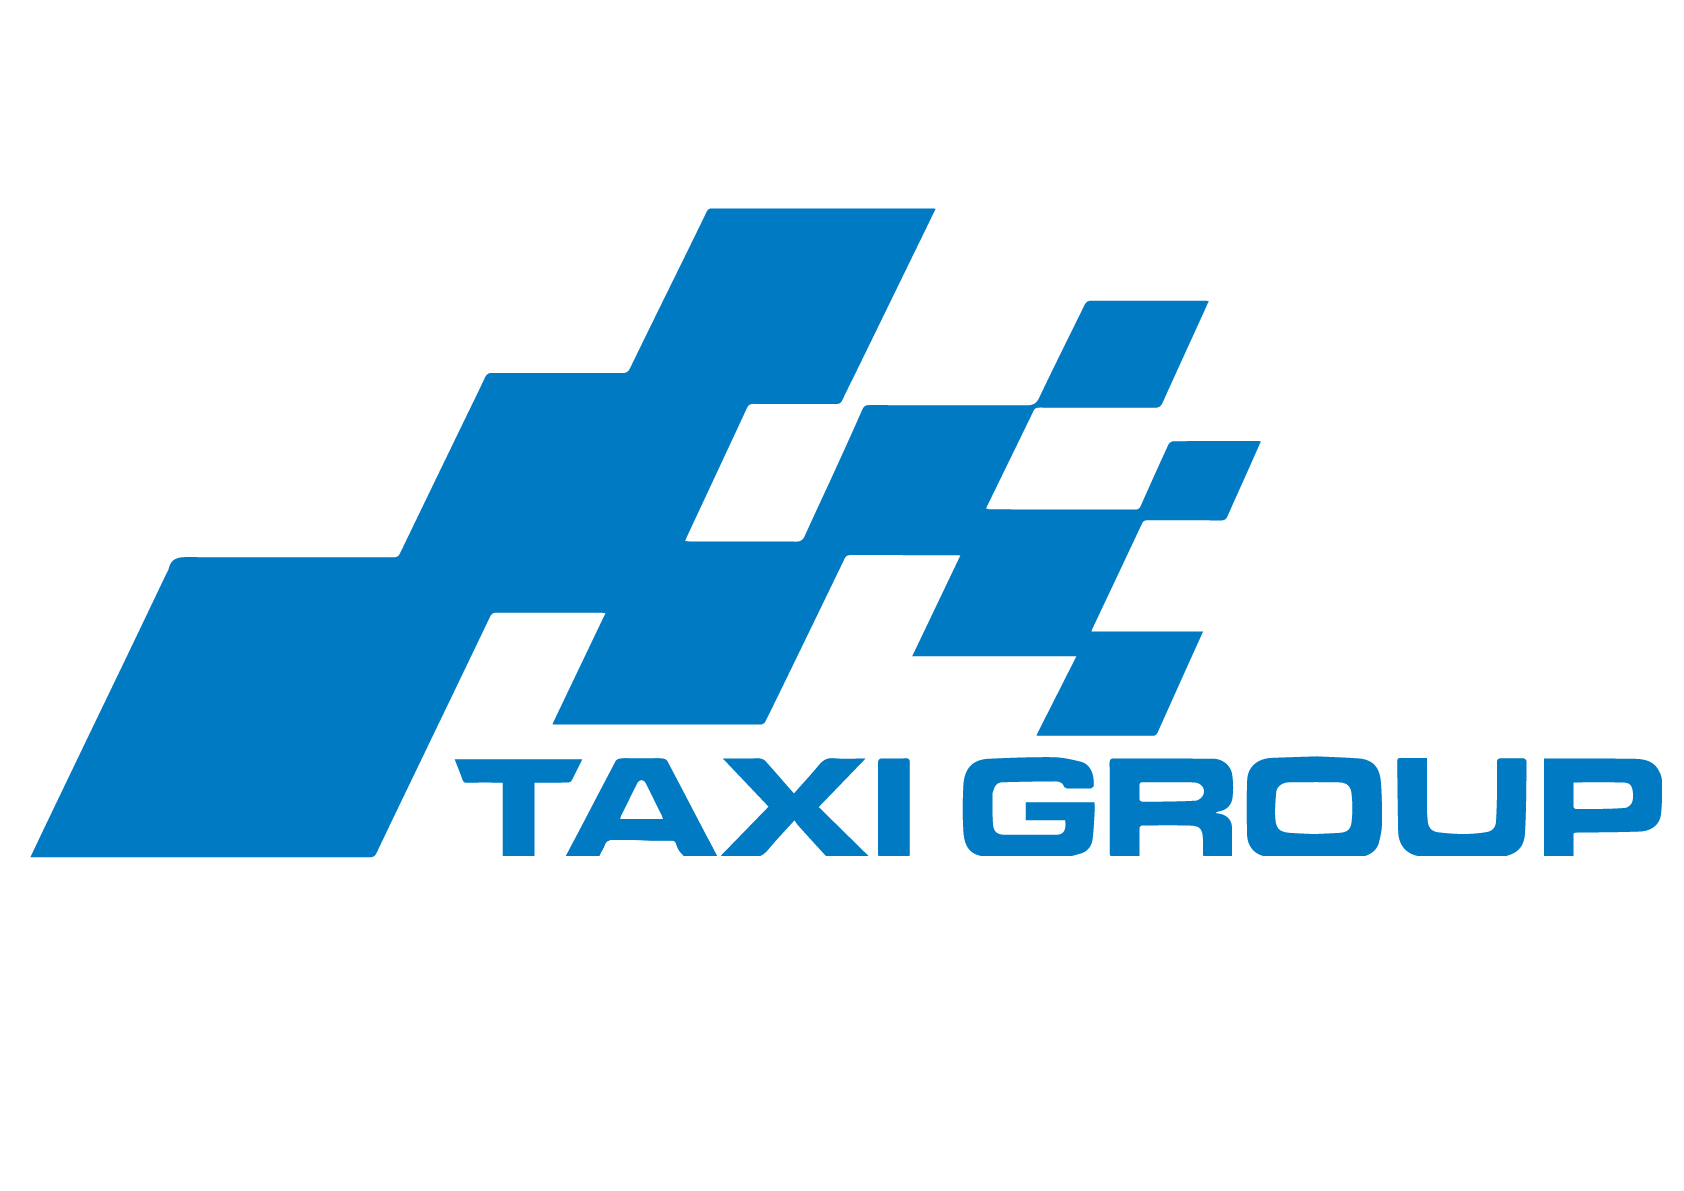 Tuyển lái xe Hãng Taxi Group làm tại Hà Nội và sân bay Nội Bài ở Tuyển lái xe Taxi Group làm Dịp Tết 2019: 170281 - Hoteljob.vn